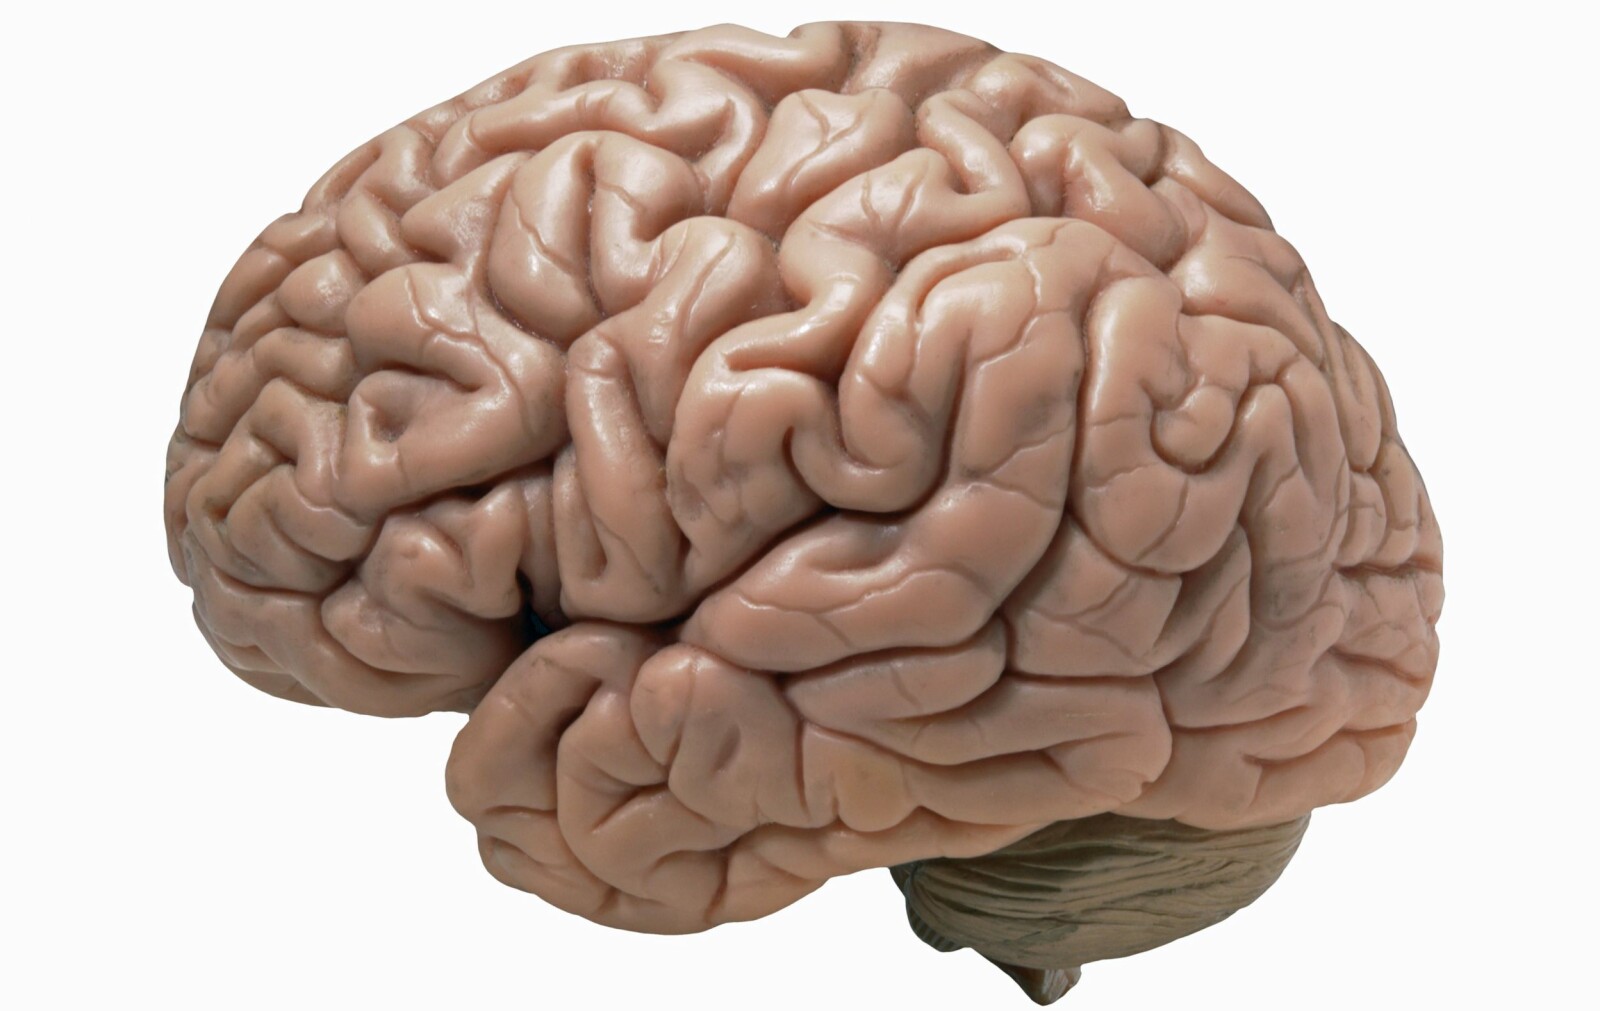 <b>DEN ANDRE HJERNEN:</b> Dette er vår offisielle hjerne, men ifølge forskere har vi en til, og den sitter lenger nede i kroppen. Tarmen har de siste årene fått stadig mer oppmerksomhet blant forskere som et intelligent organ.